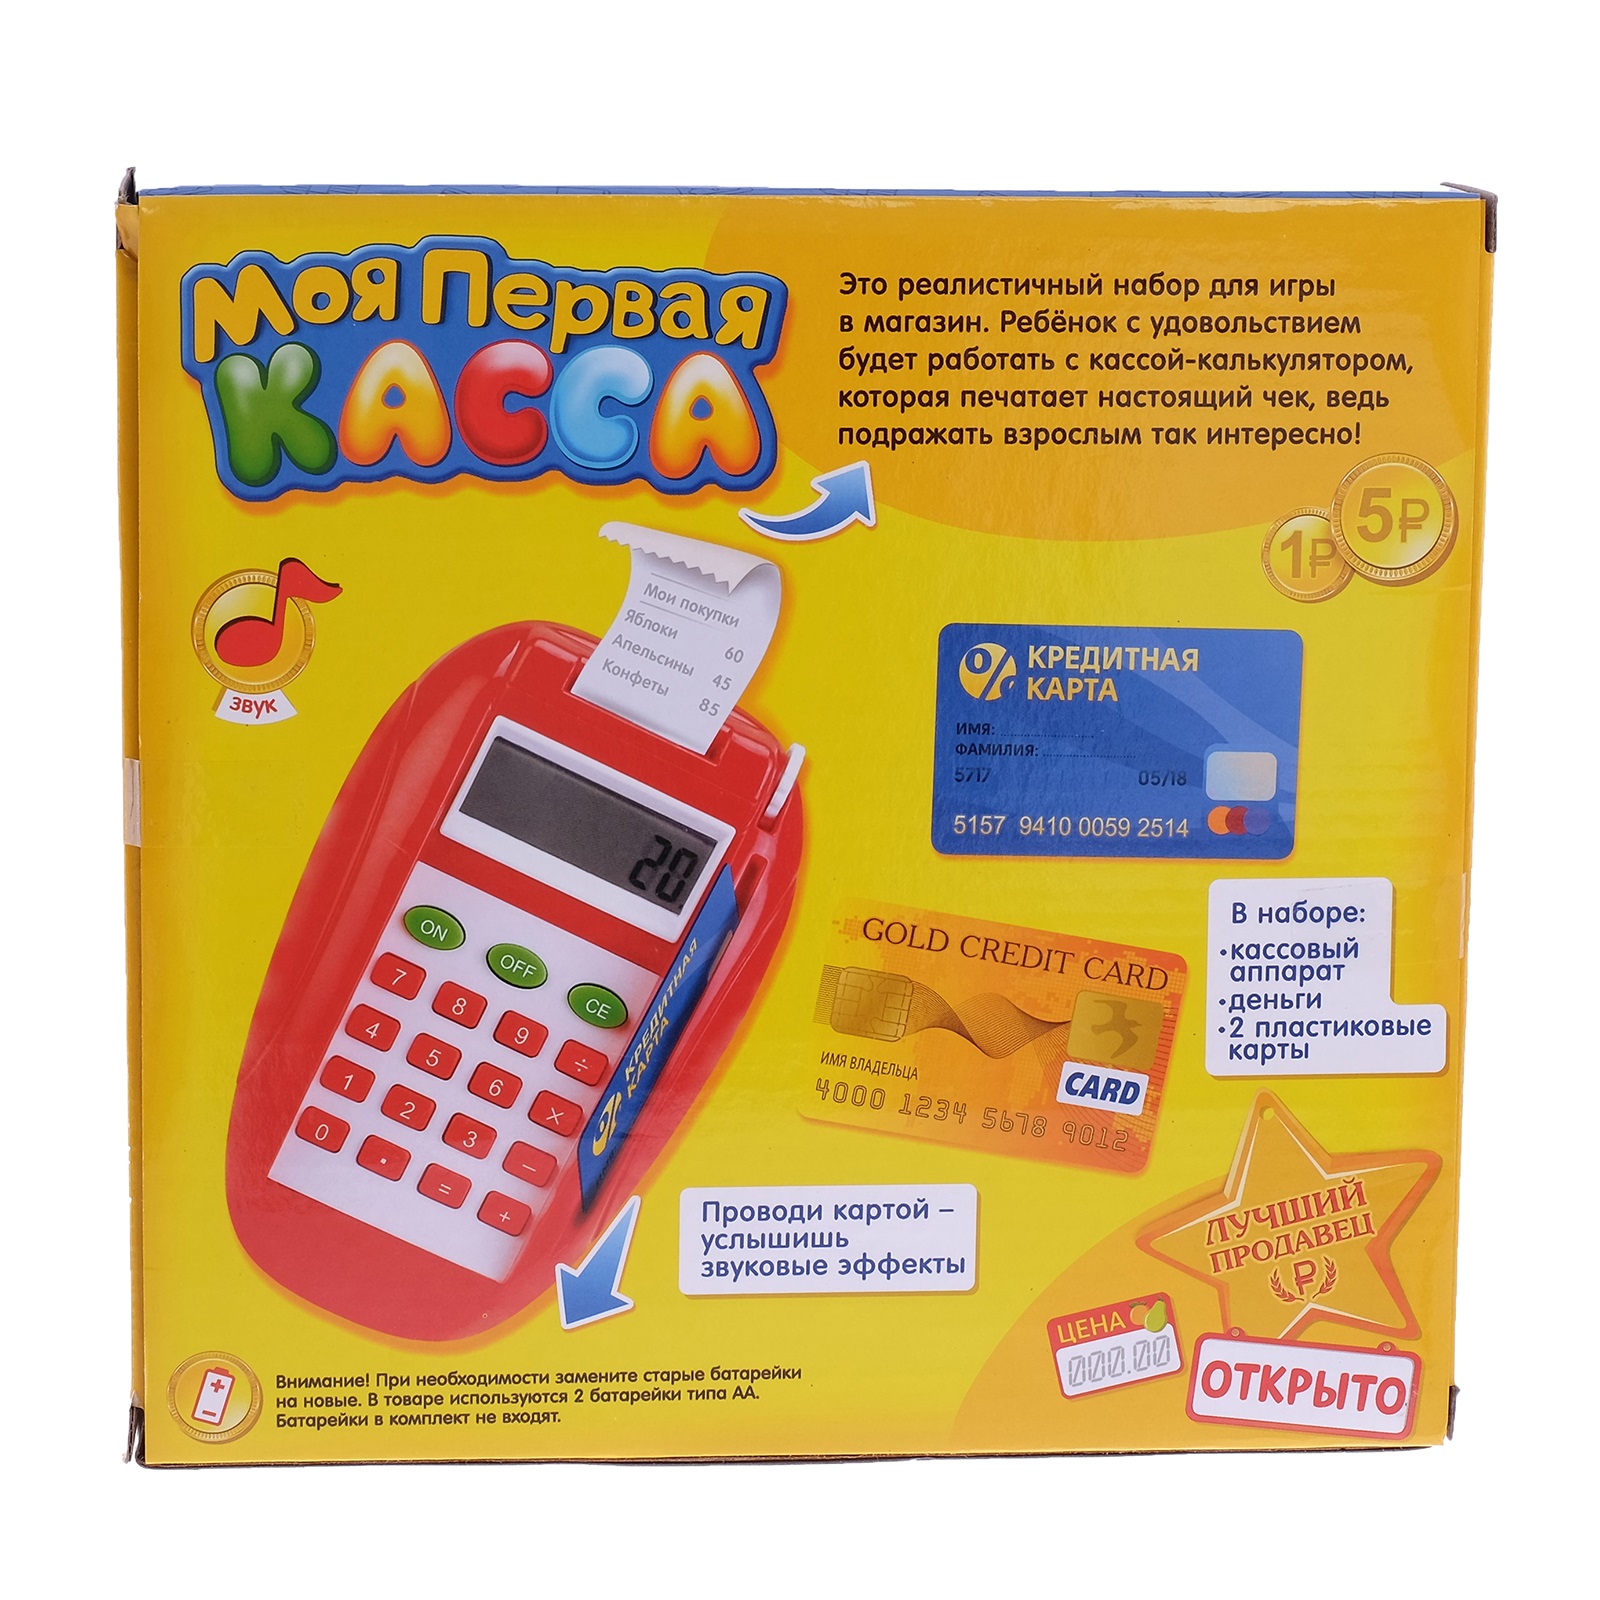 Детские терминалы. Касса-калькулятор "моя первая касса", с. Игровой набор ZABIAKA касса. Кассовый аппарат для детей. Игрушечный терминал для оплаты.